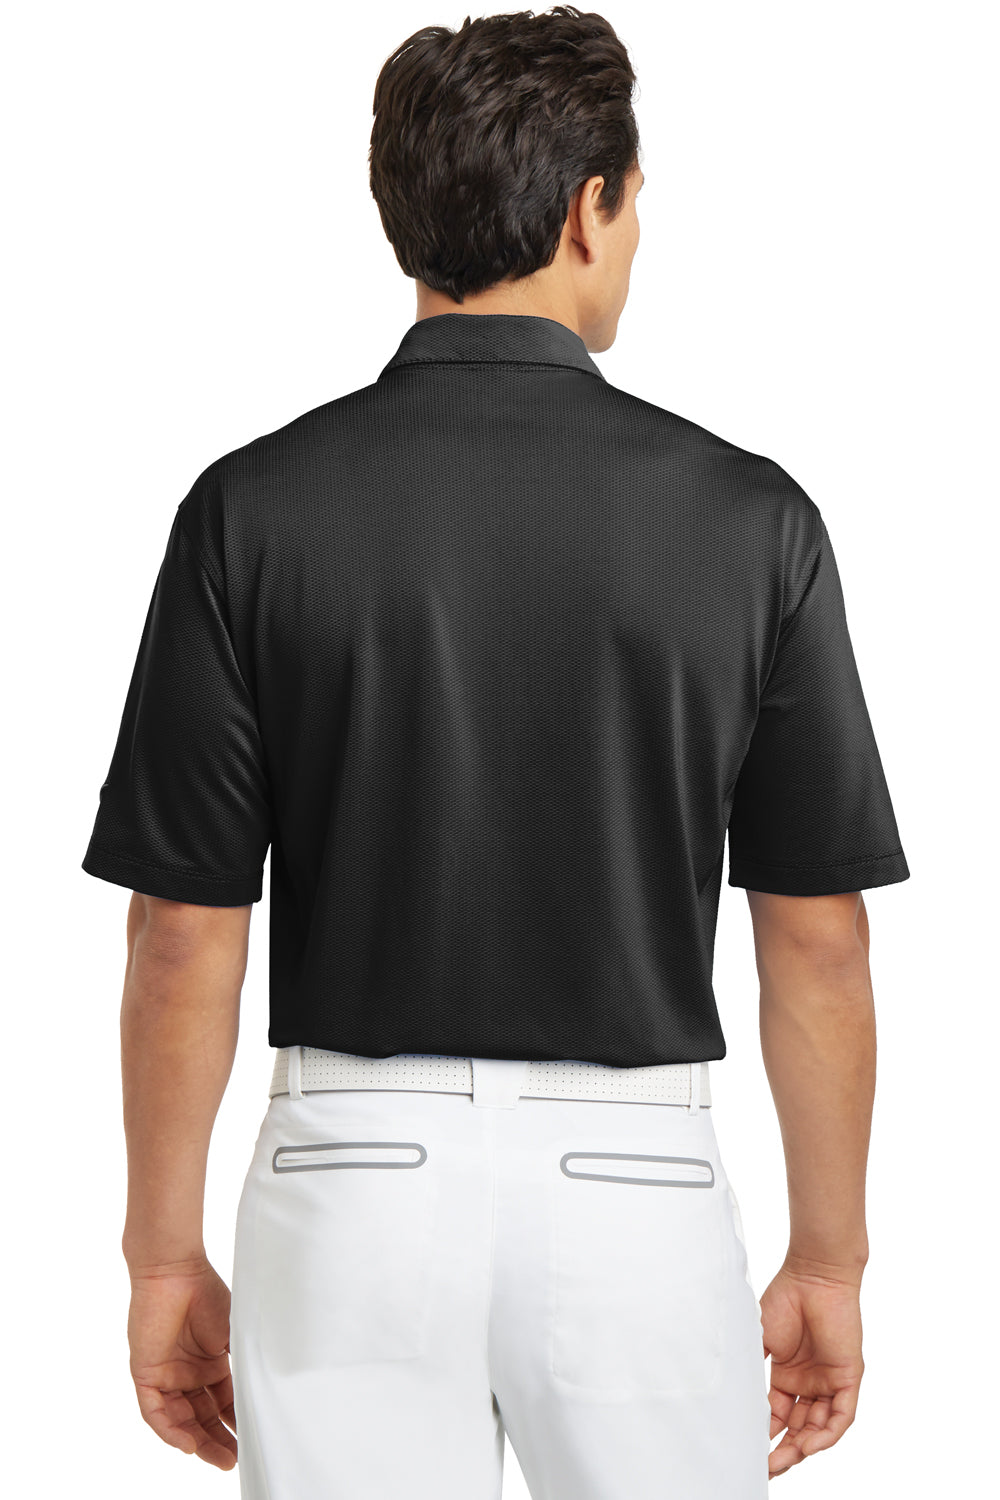 Nike 354055 Mens Sphere Dry Moisture Wicking Short Sleeve Polo Shirt Black Back